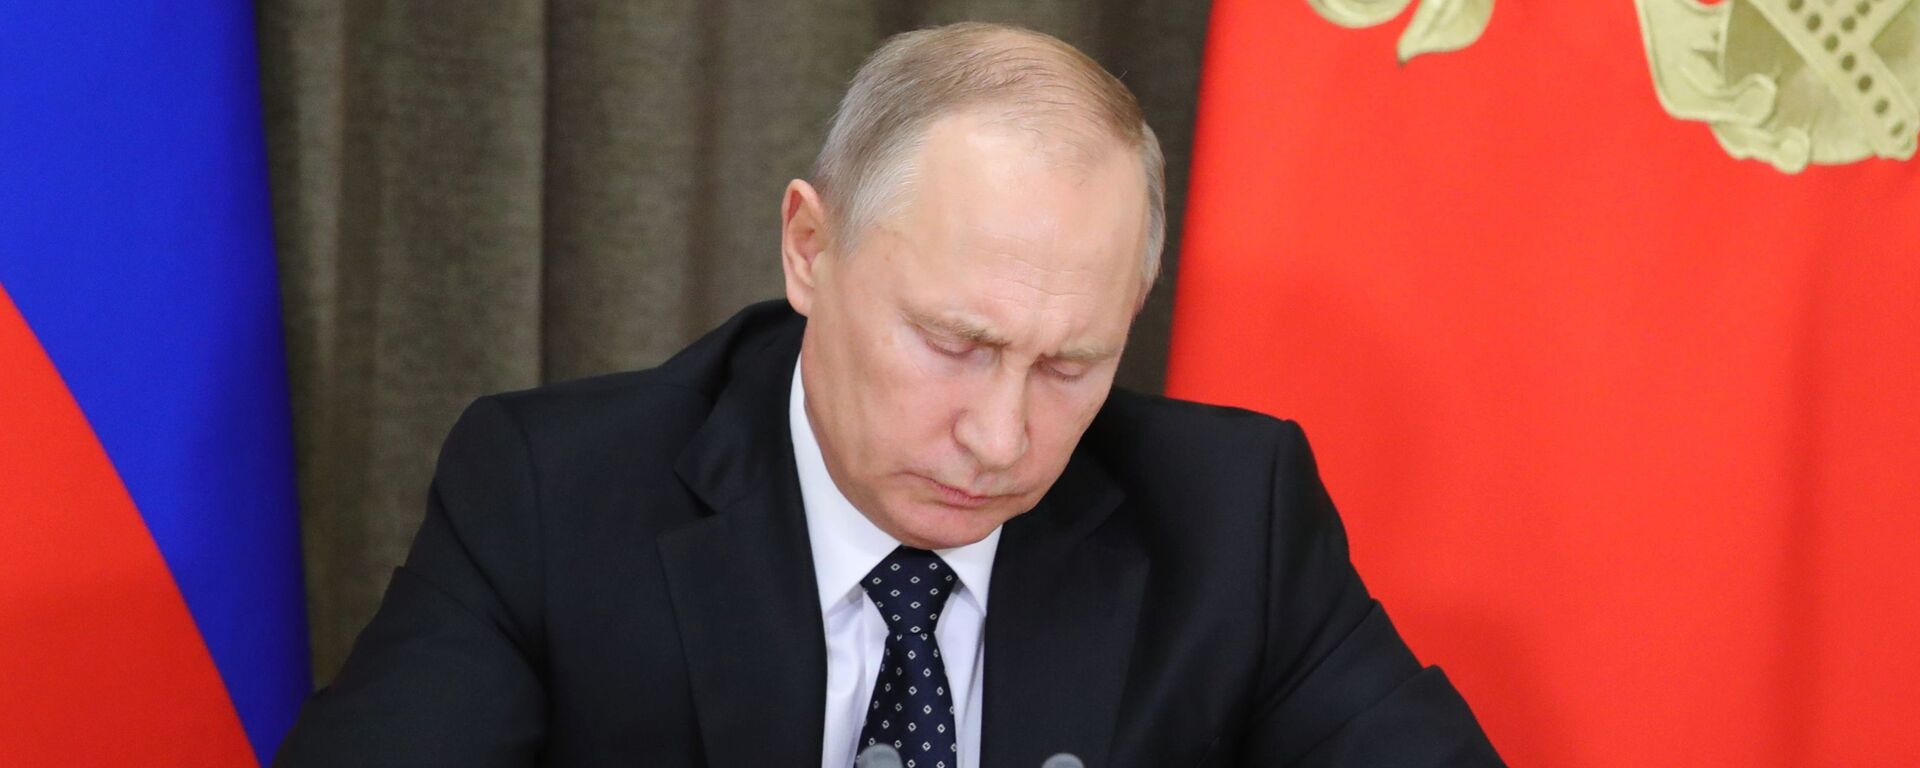 Президент РФ В. Путин провел совещание по вопросам обеспечения технического переоснащения Вооруженных сил - Sputnik Армения, 1920, 29.01.2021